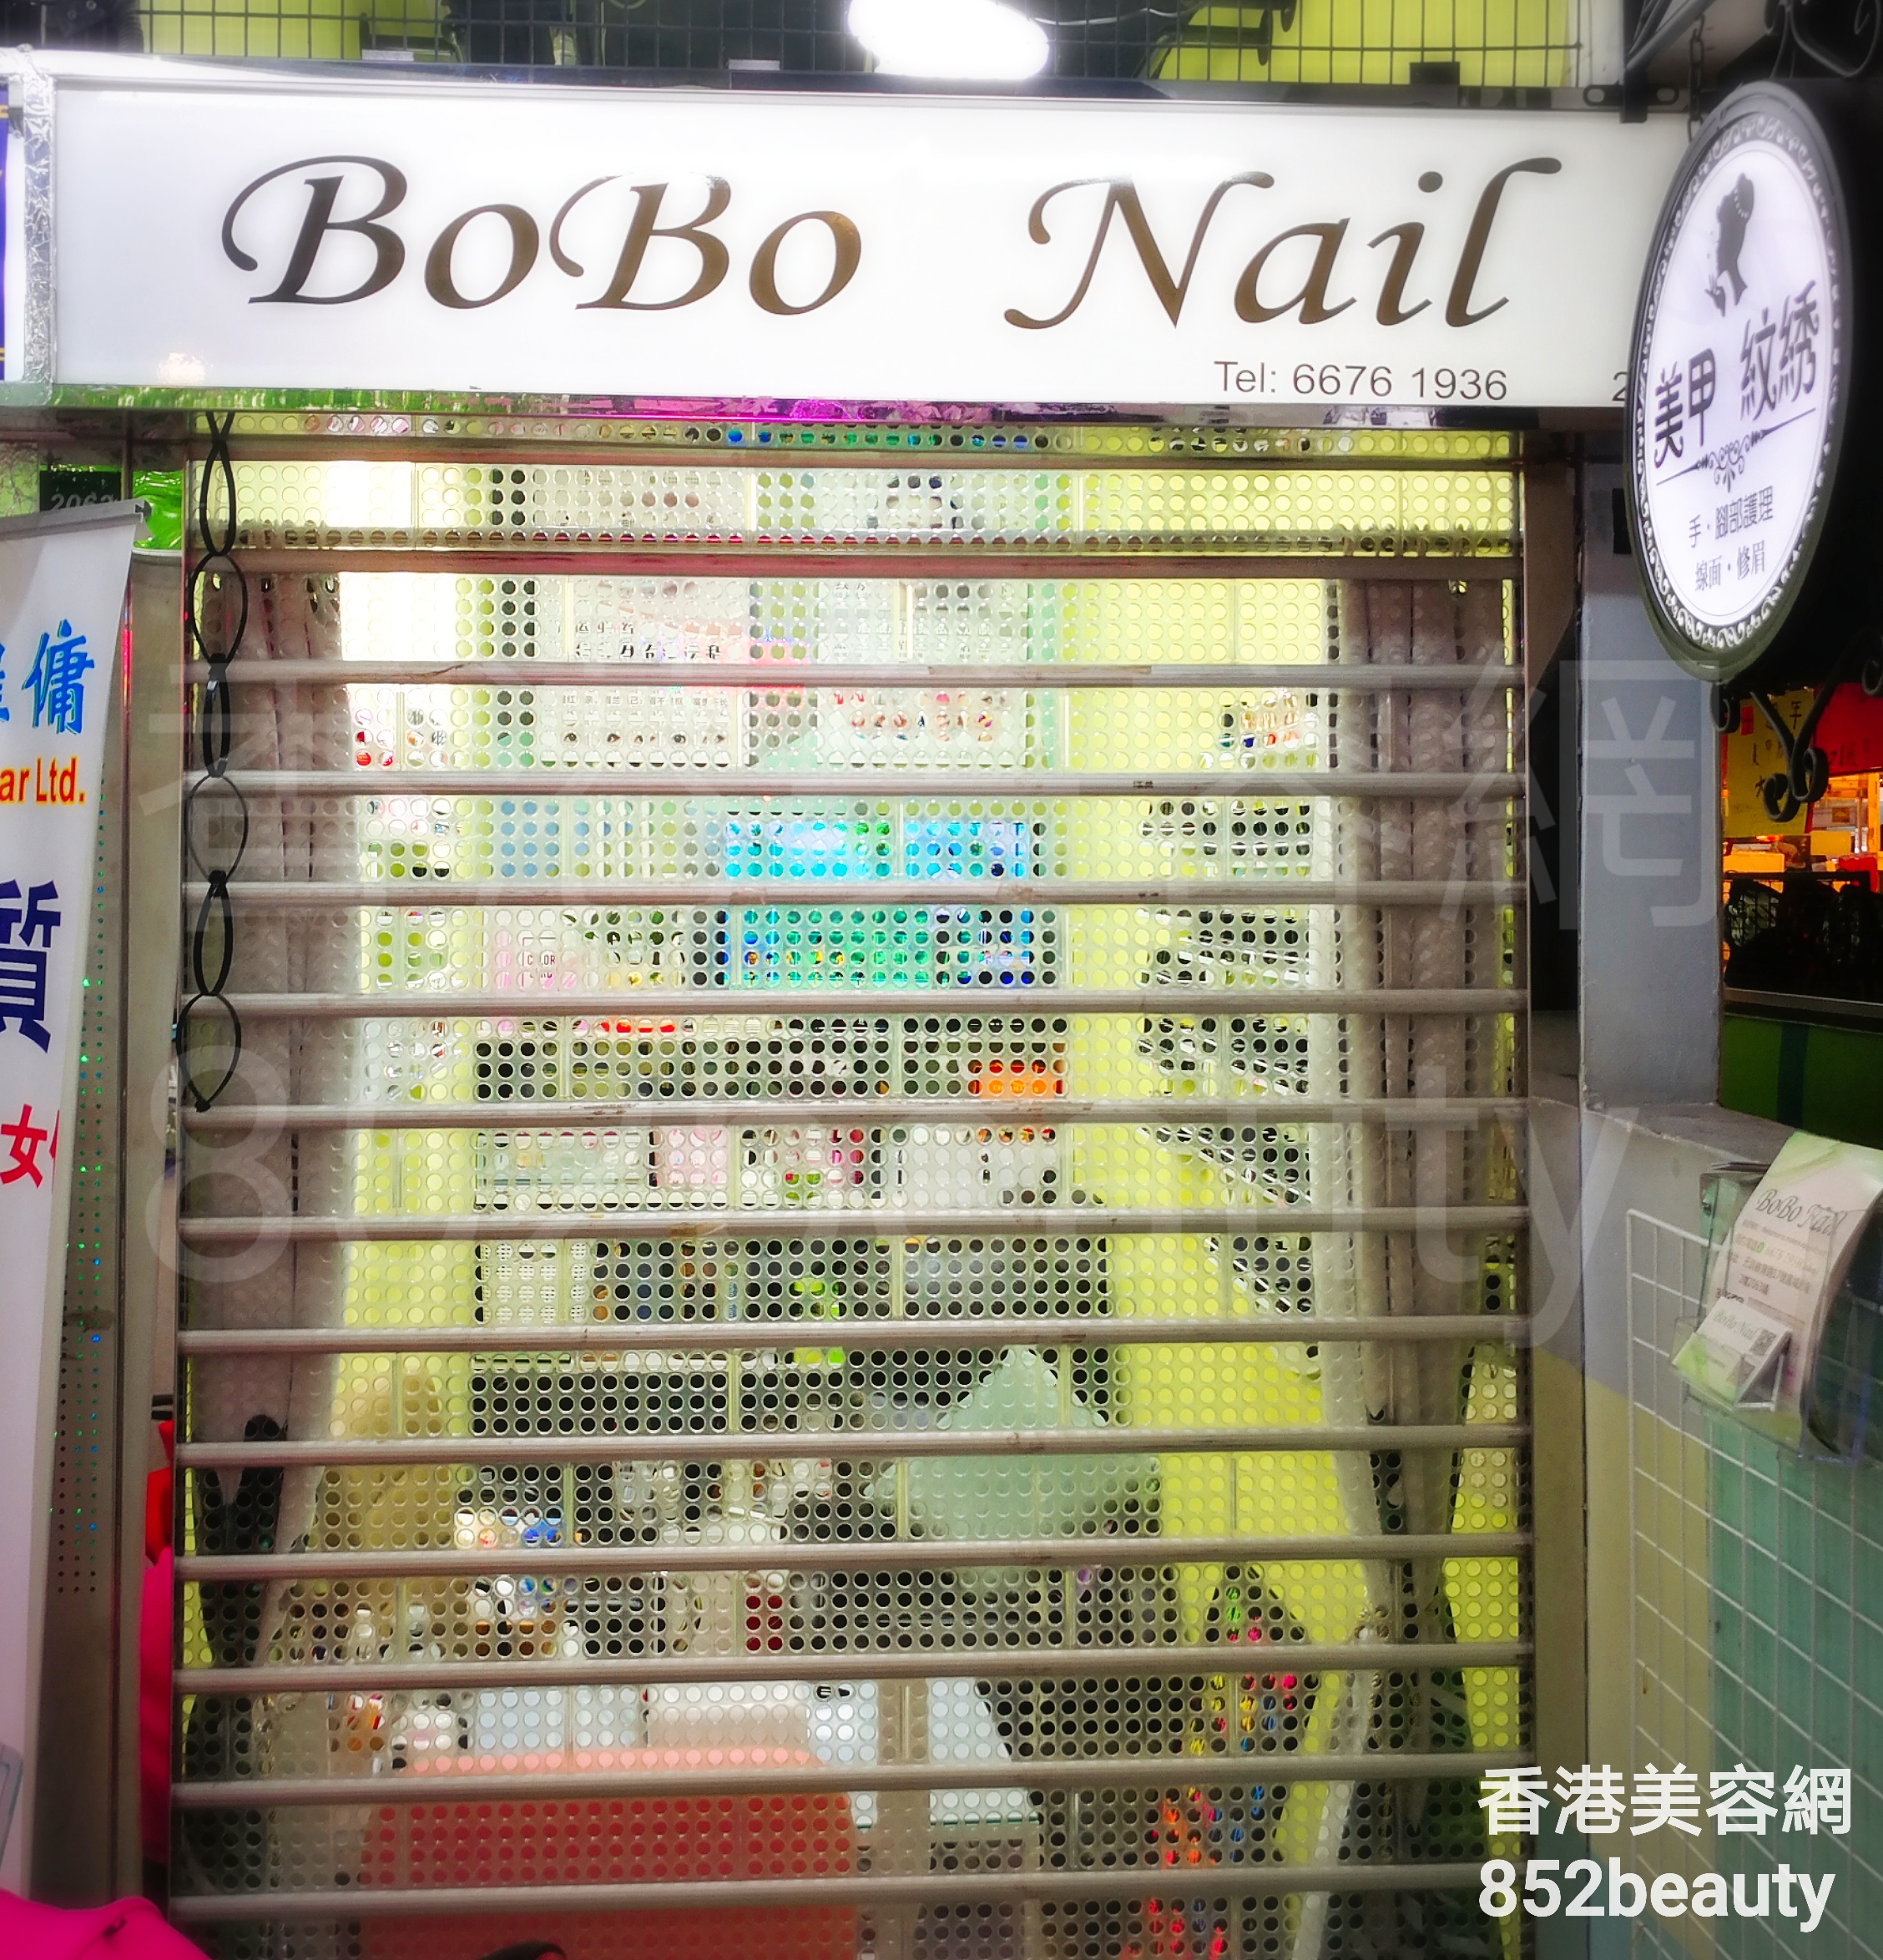 Hand and foot care: BoBo Nail